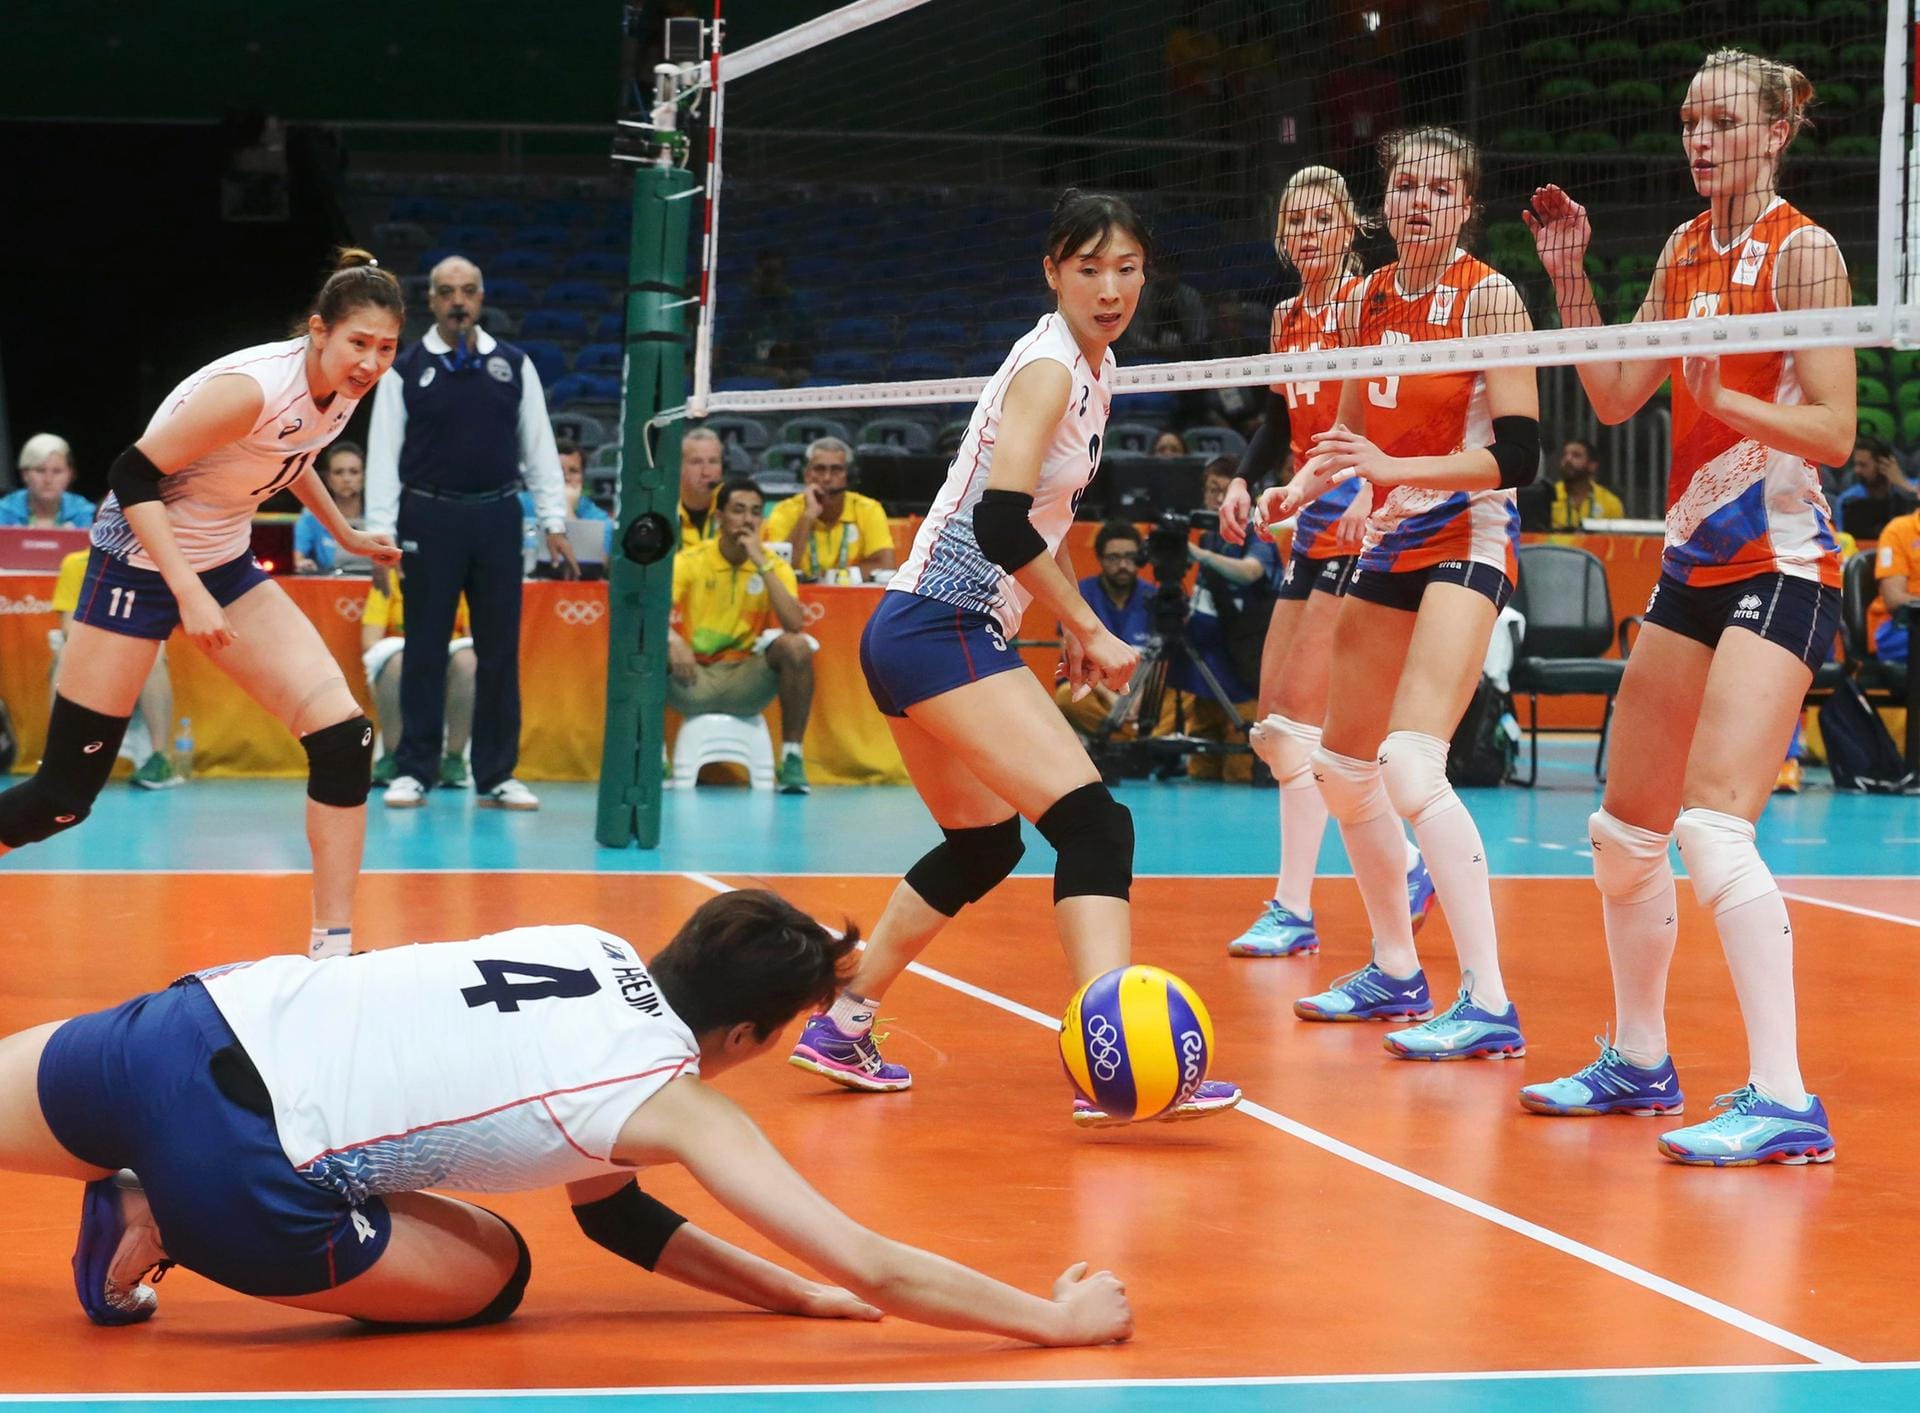 Alle Blicke sind aufs Spielgerät gerichtet. Im Viertelfinale des olympischen Volleyballturniers verpatzt die Südkoreanerin Kim Hee-Jin ihre Annahme im Spiel gegen die Niederlande. Nicht nur in dieser Situation hat Südkorea das Nachsehen: Die Niederlande gewinnt das Spiel mit 3:1-Sätzen und steht im Halbfinale.